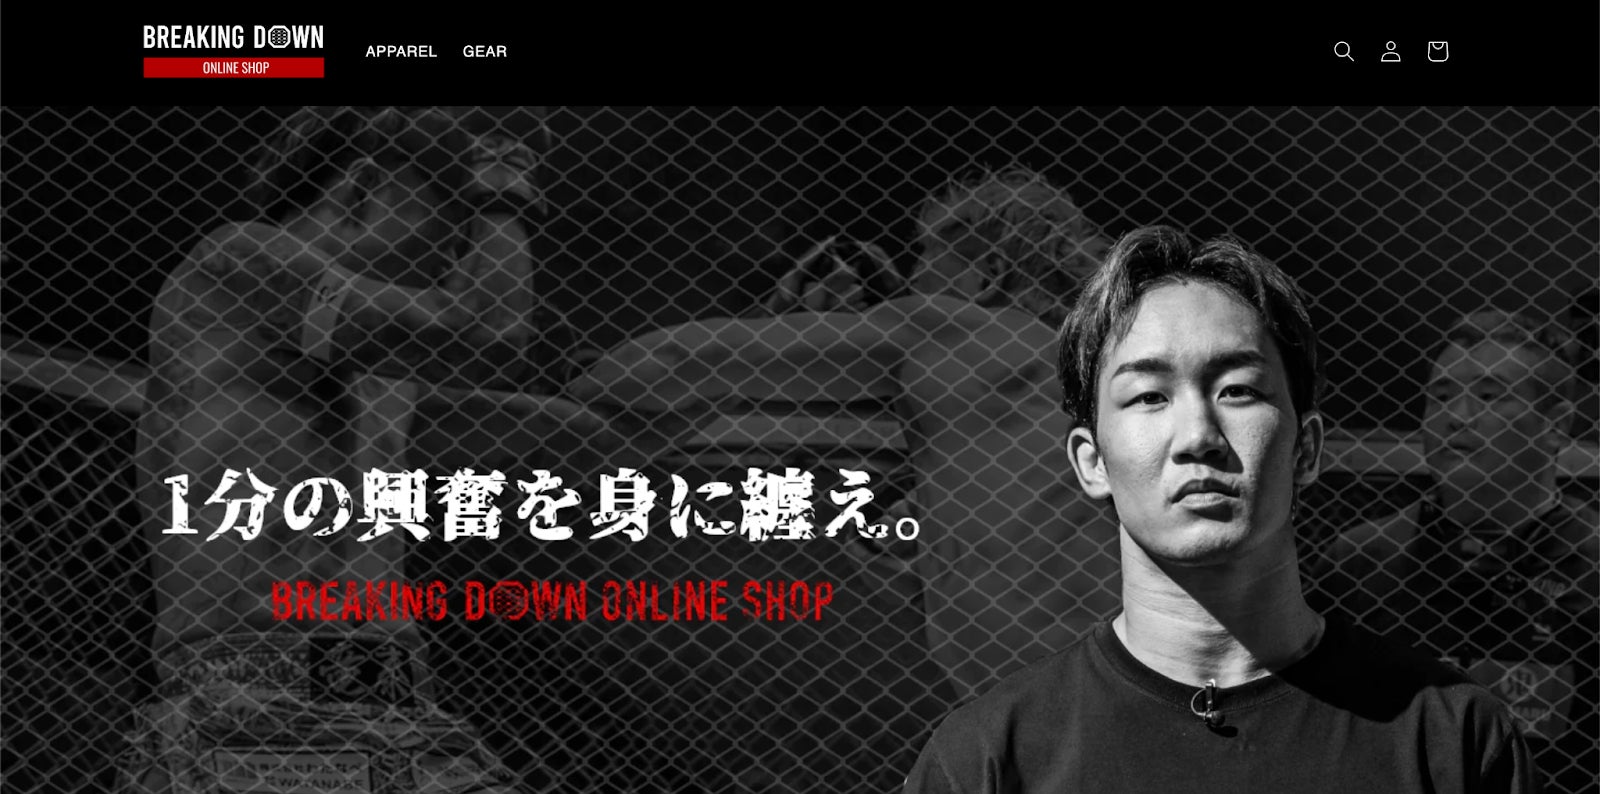 人気格闘技イベント『BreakingDown』がオンラインショップをオープン！